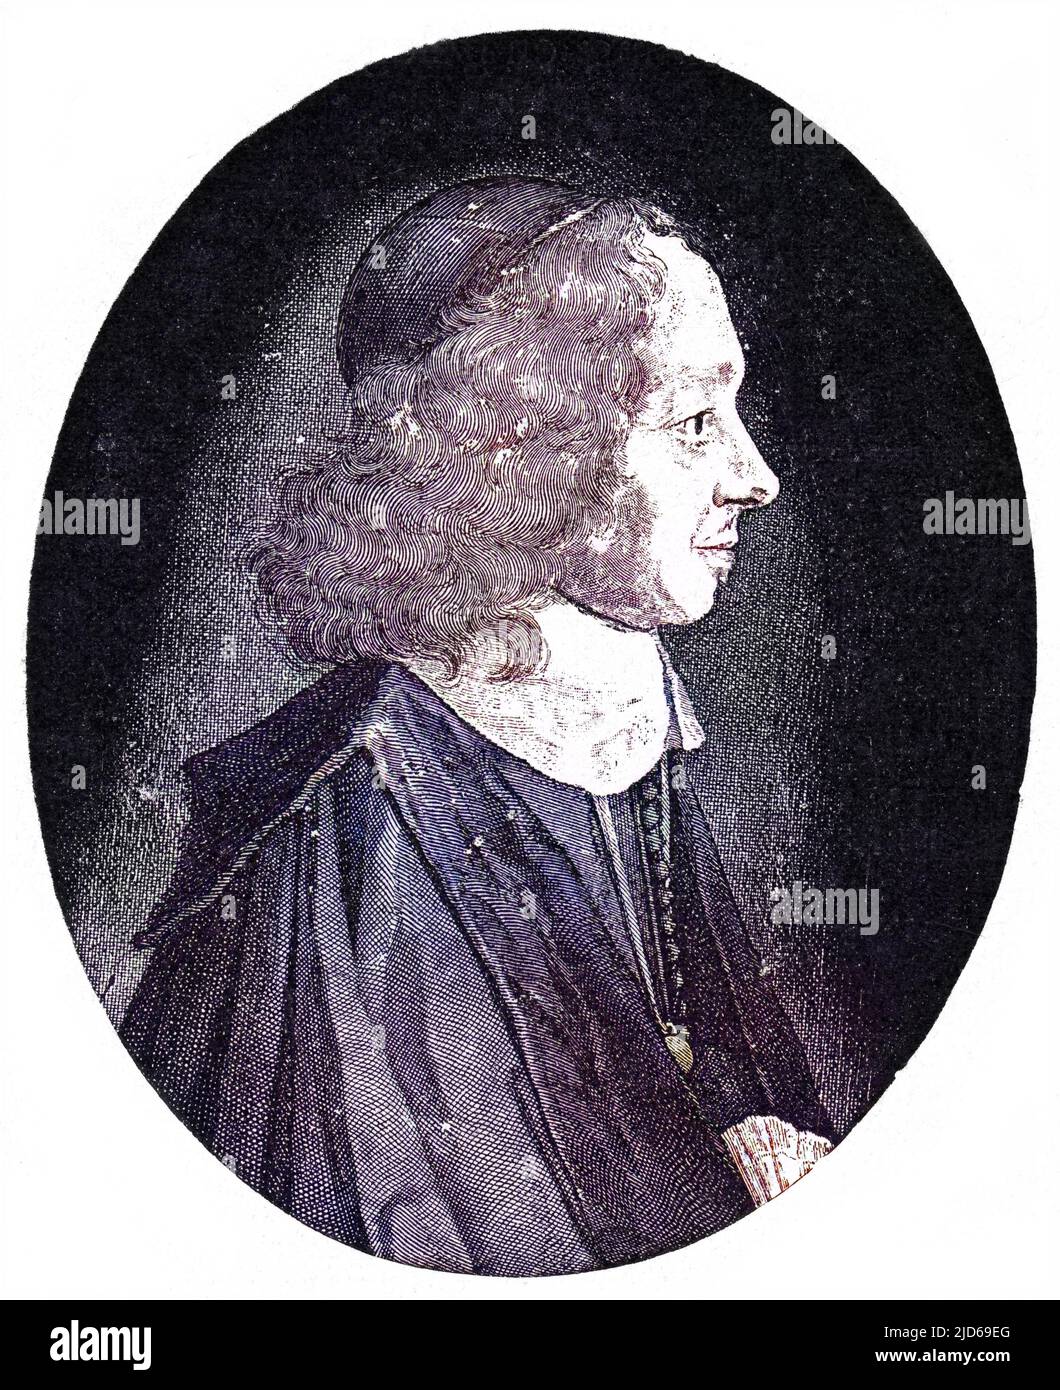 CONSTANTIJN HUYGENS niederländischer Diplomat und Dichter, Vater des Wissenschaftlers Christian Huygens. Kolorierte Version von : 10161570 Datum: 1596 - 1687 Stockfoto